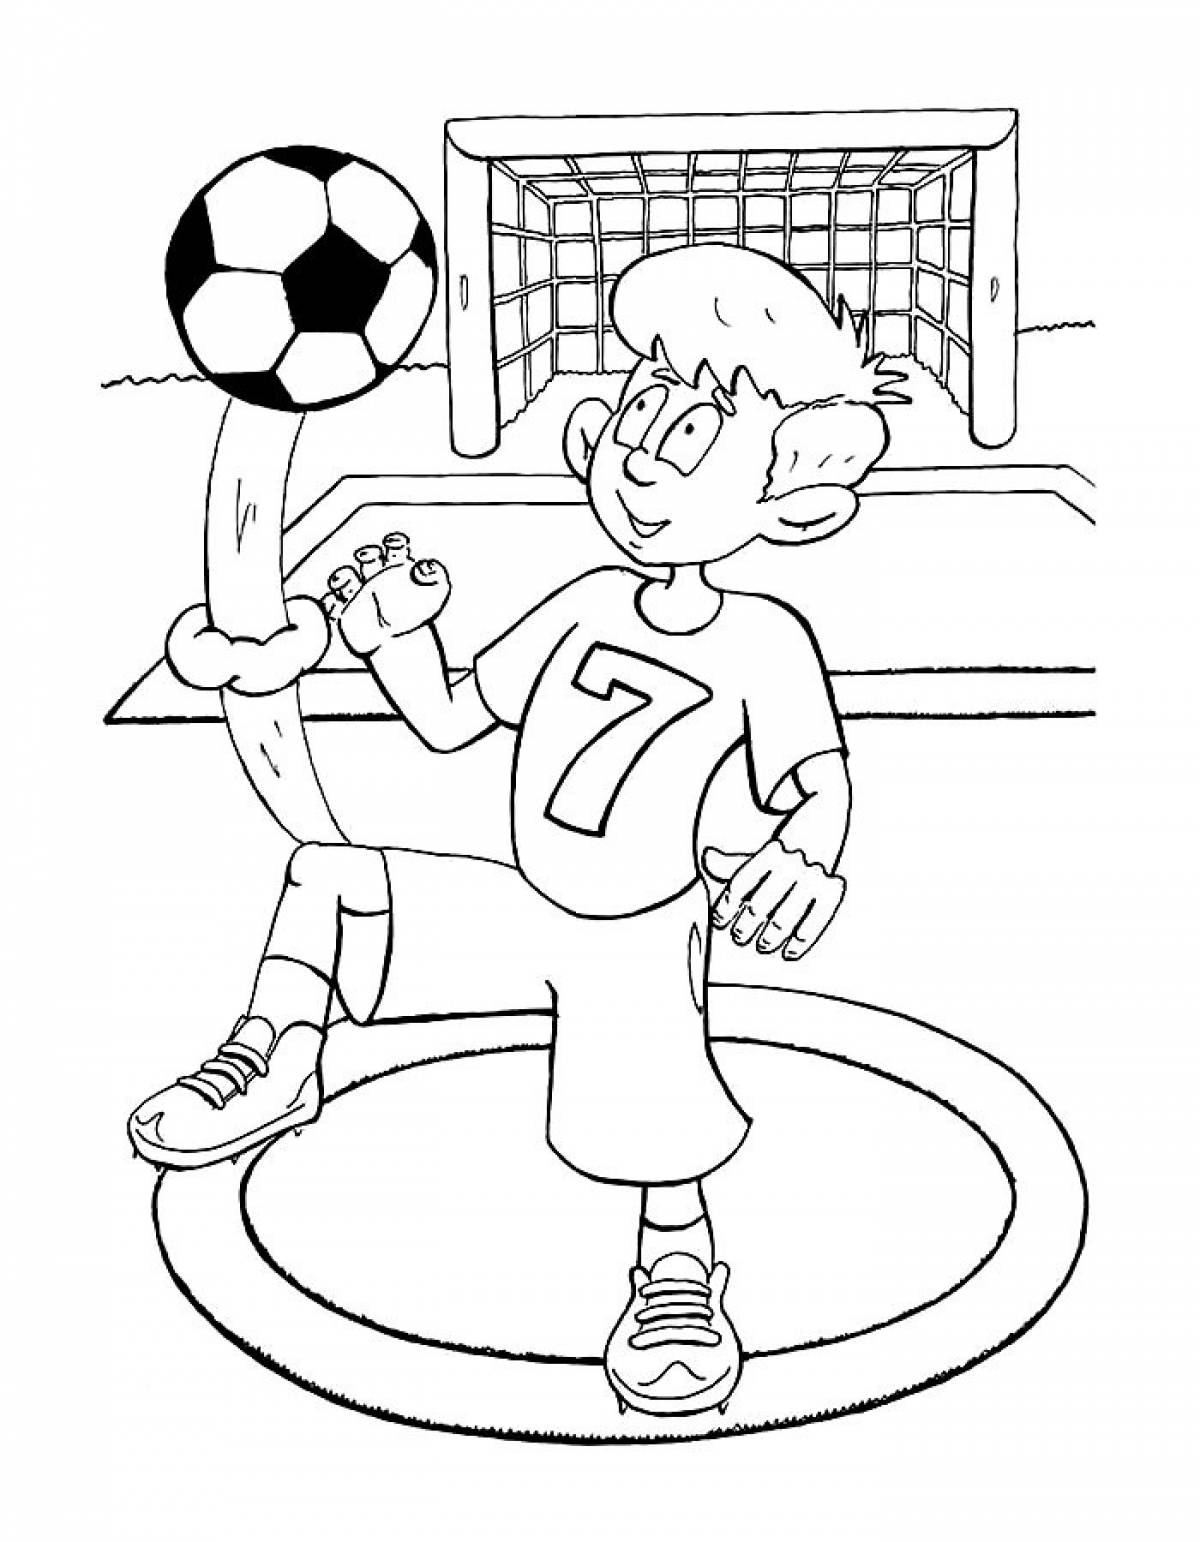 Boy soccer player